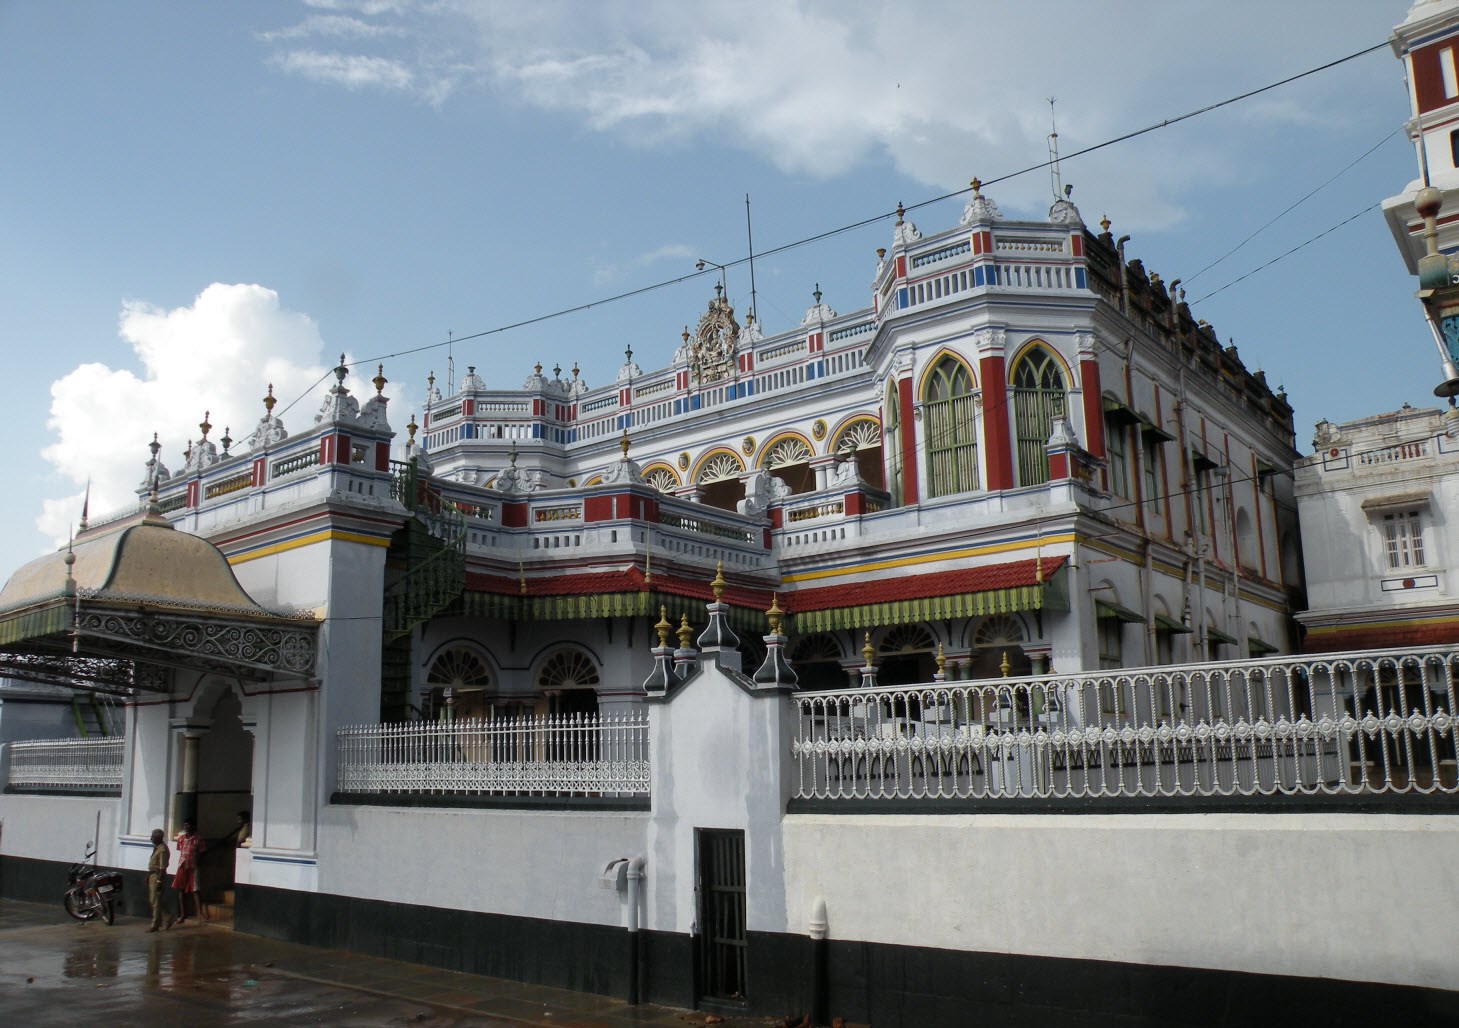 Chettinad Raja Palace